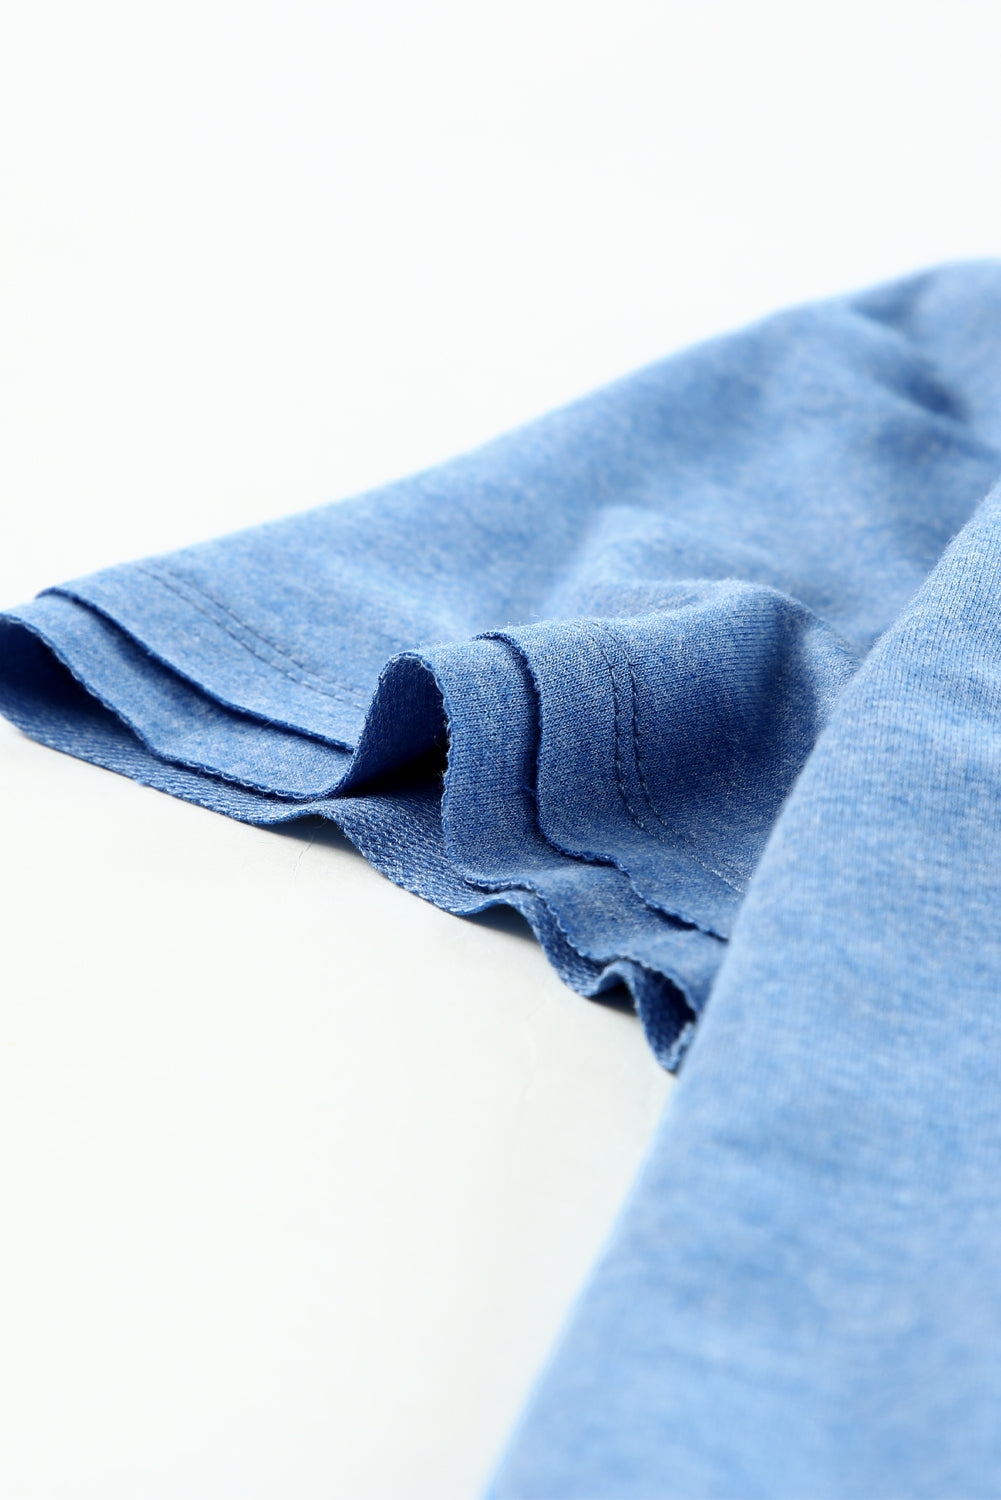 Nebesno modra mineralna majica s kratkimi rokavi v izrezu